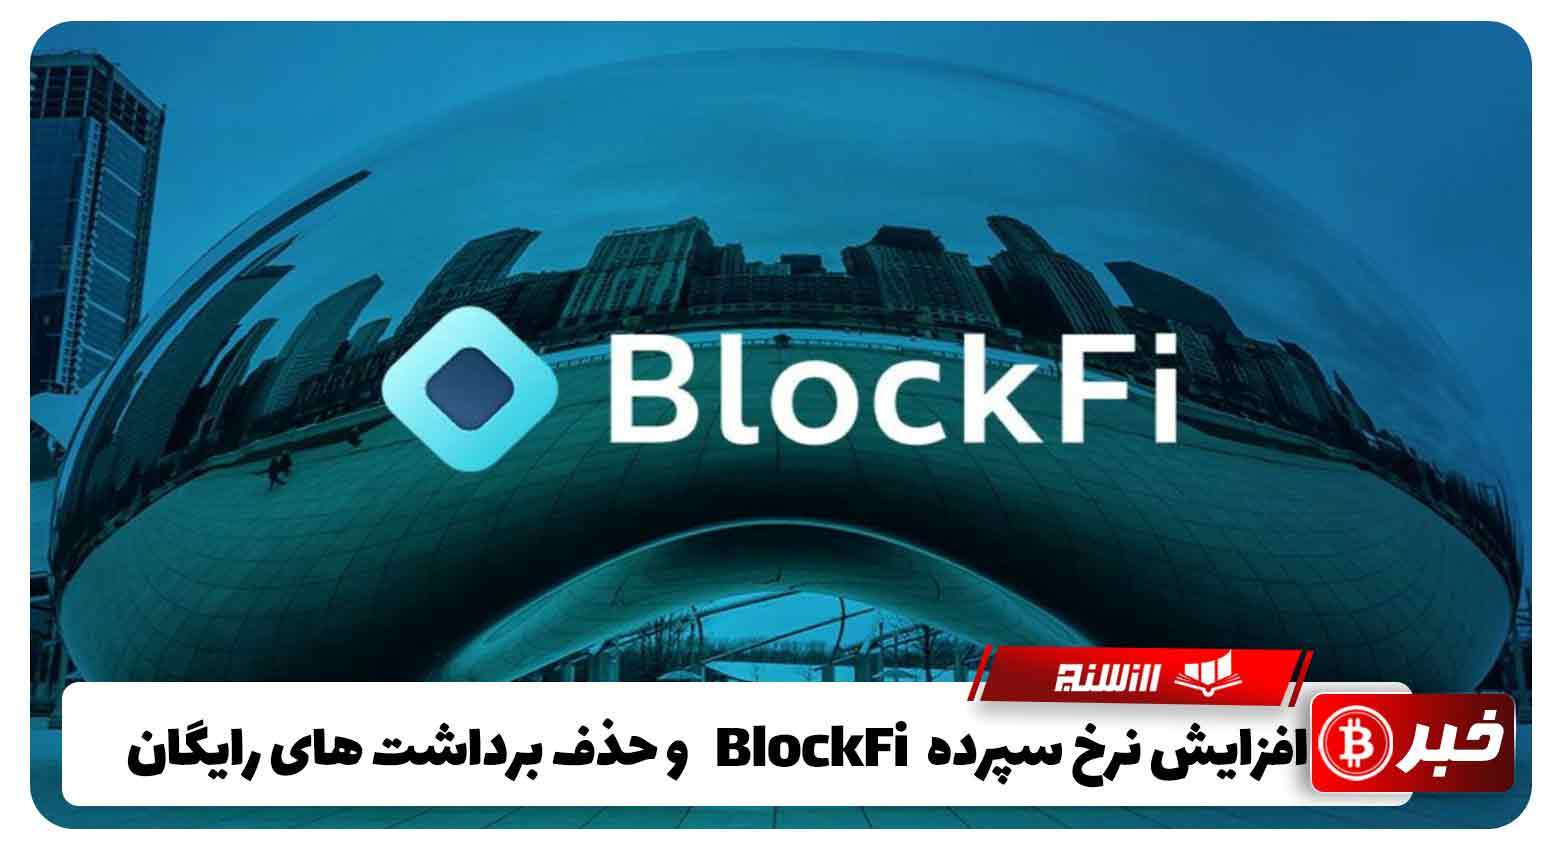  افزایش نرخ سپرده BlockFi و حذف برداشت های رایگان